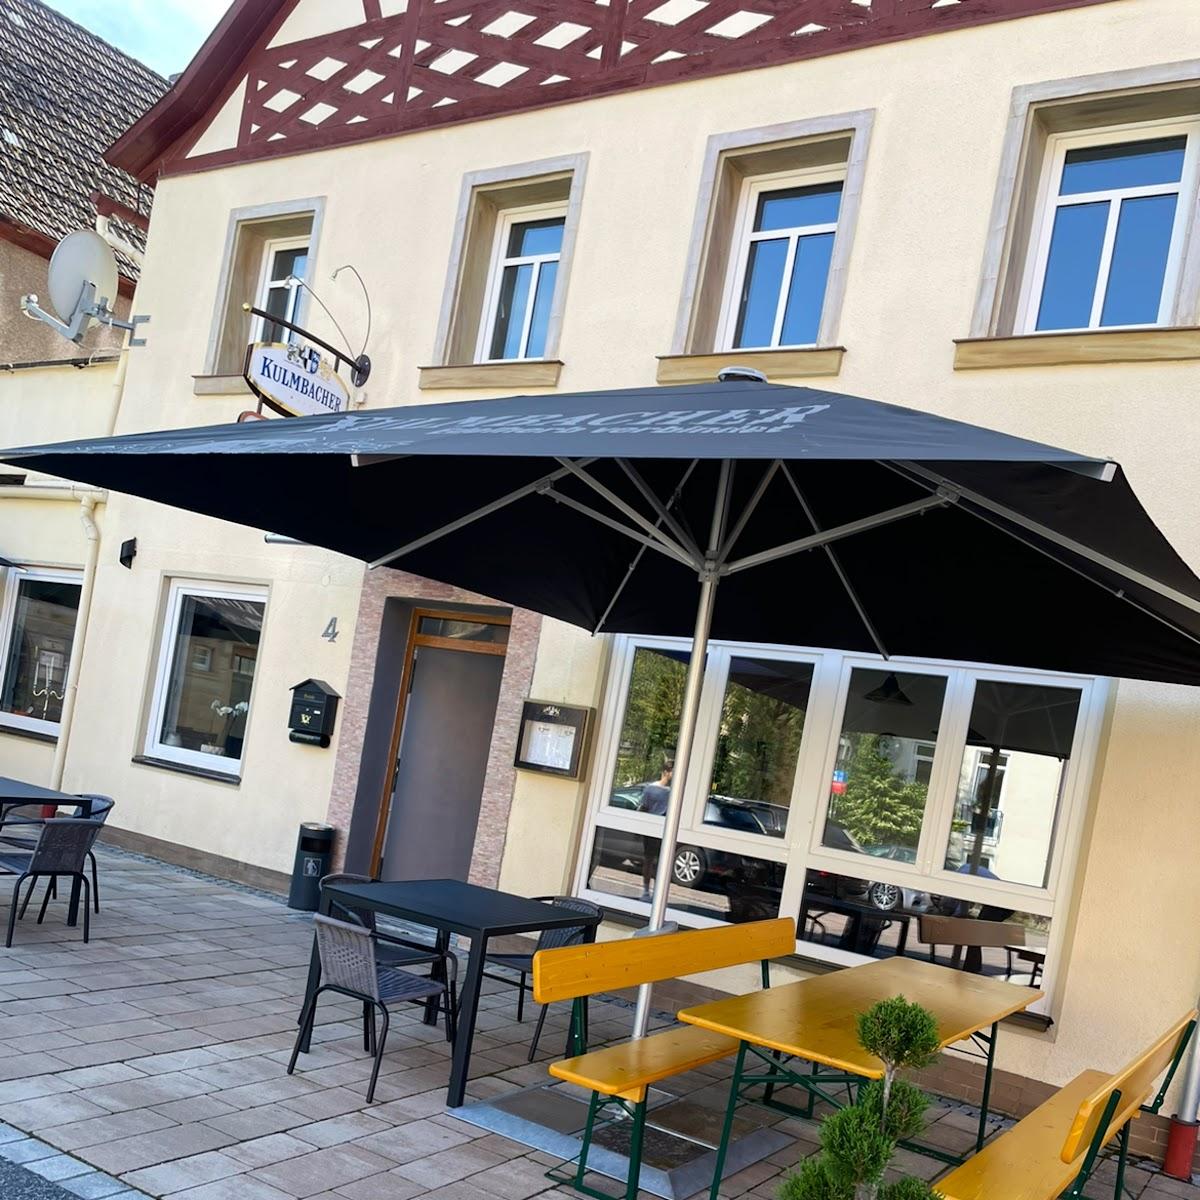 Restaurant "Cafe am Rathausplatz" in Thurnau